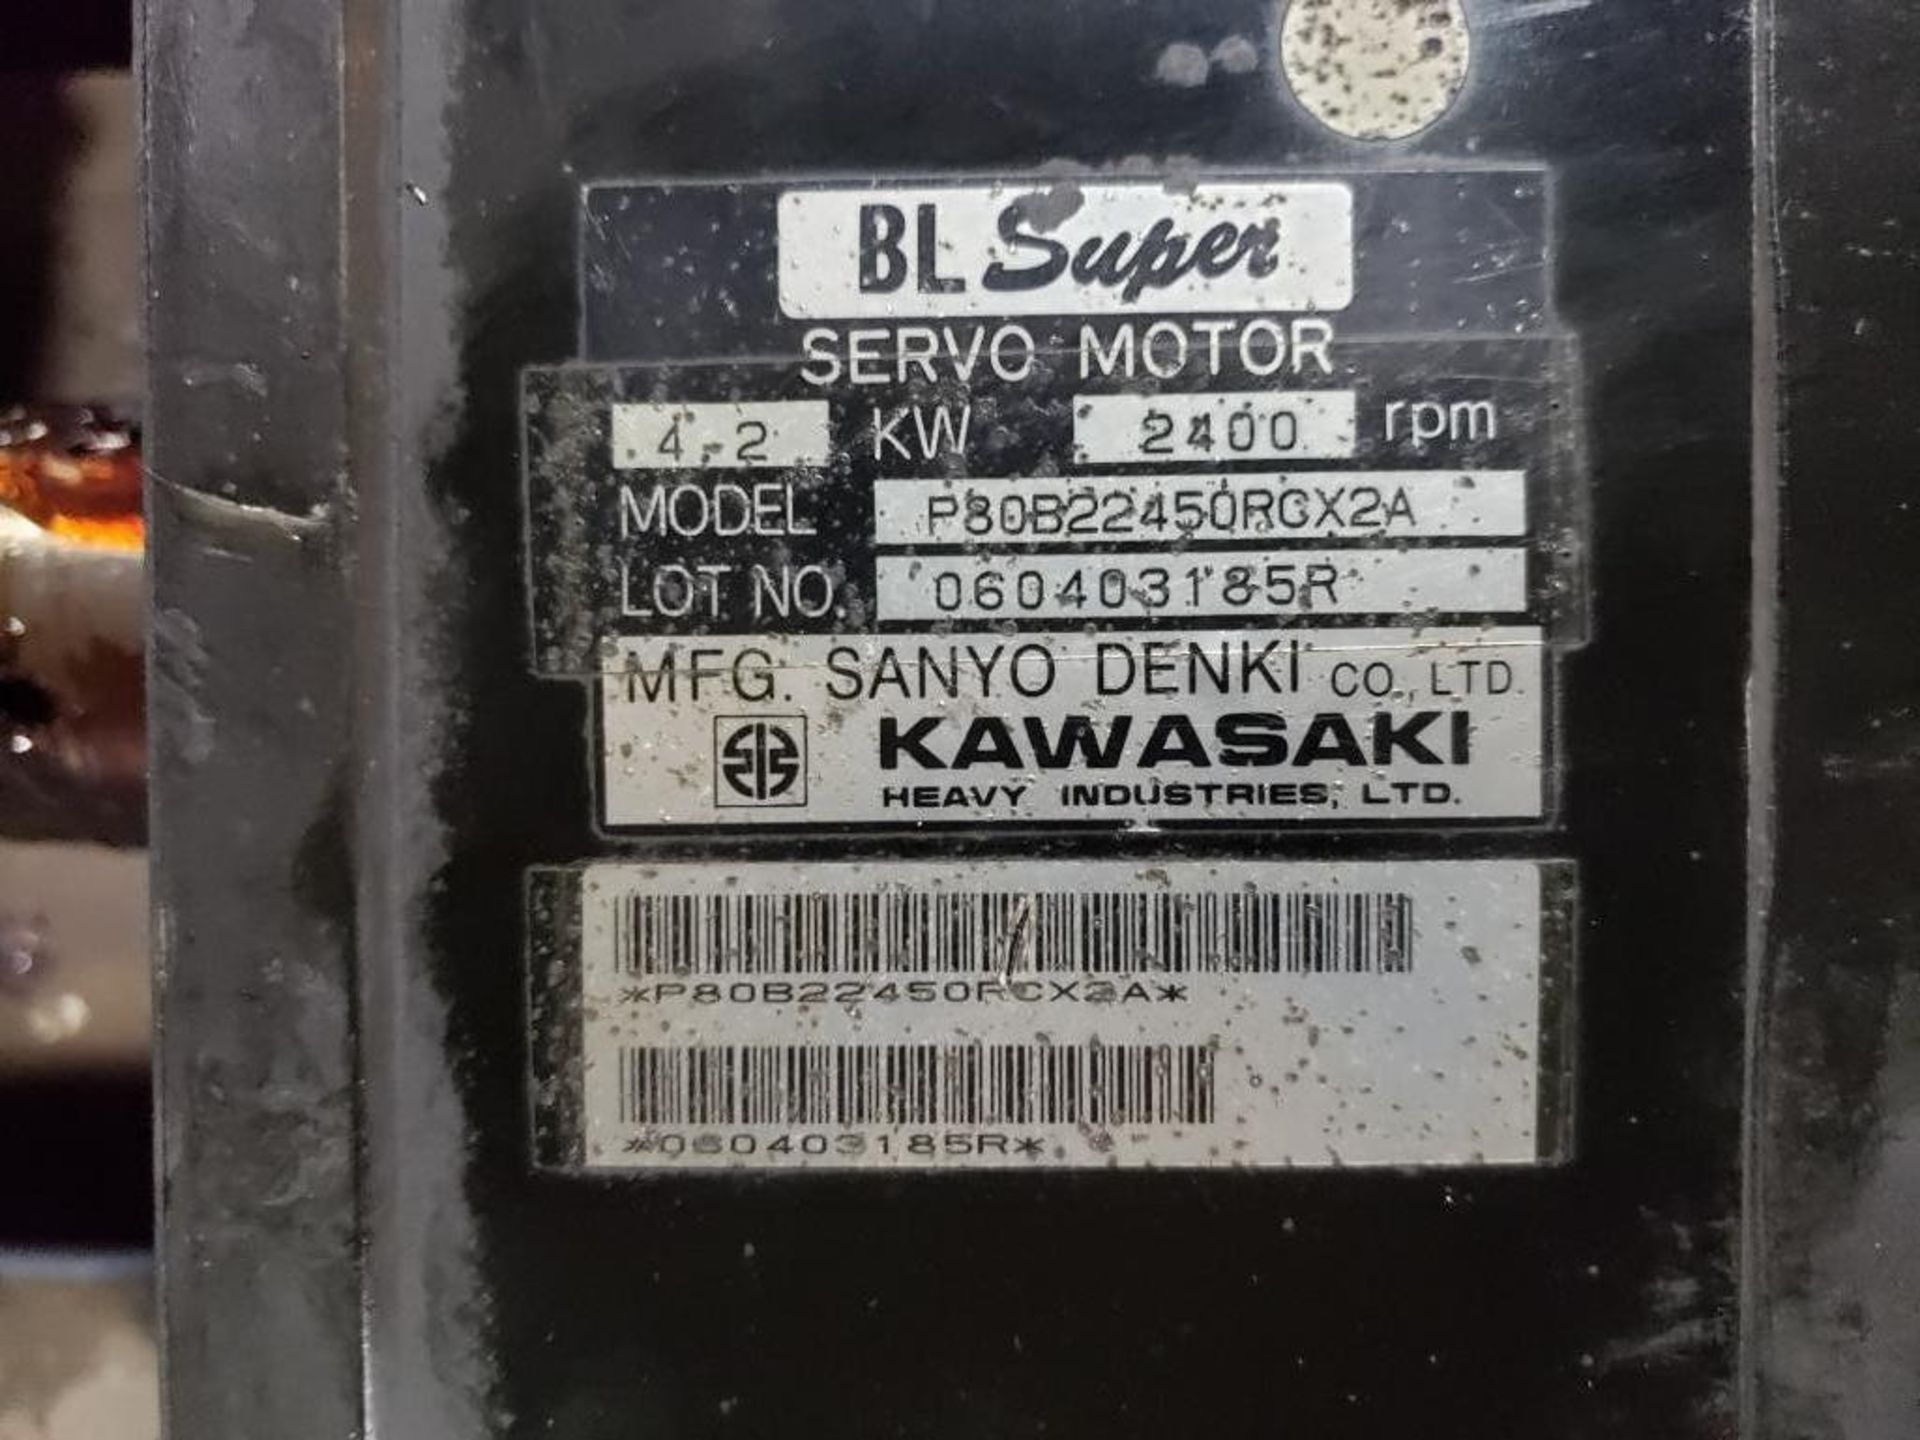 Qty 2 - Kawasaki servo motor. Series BL Super. Model P80B22450RCX2A. - Image 2 of 4